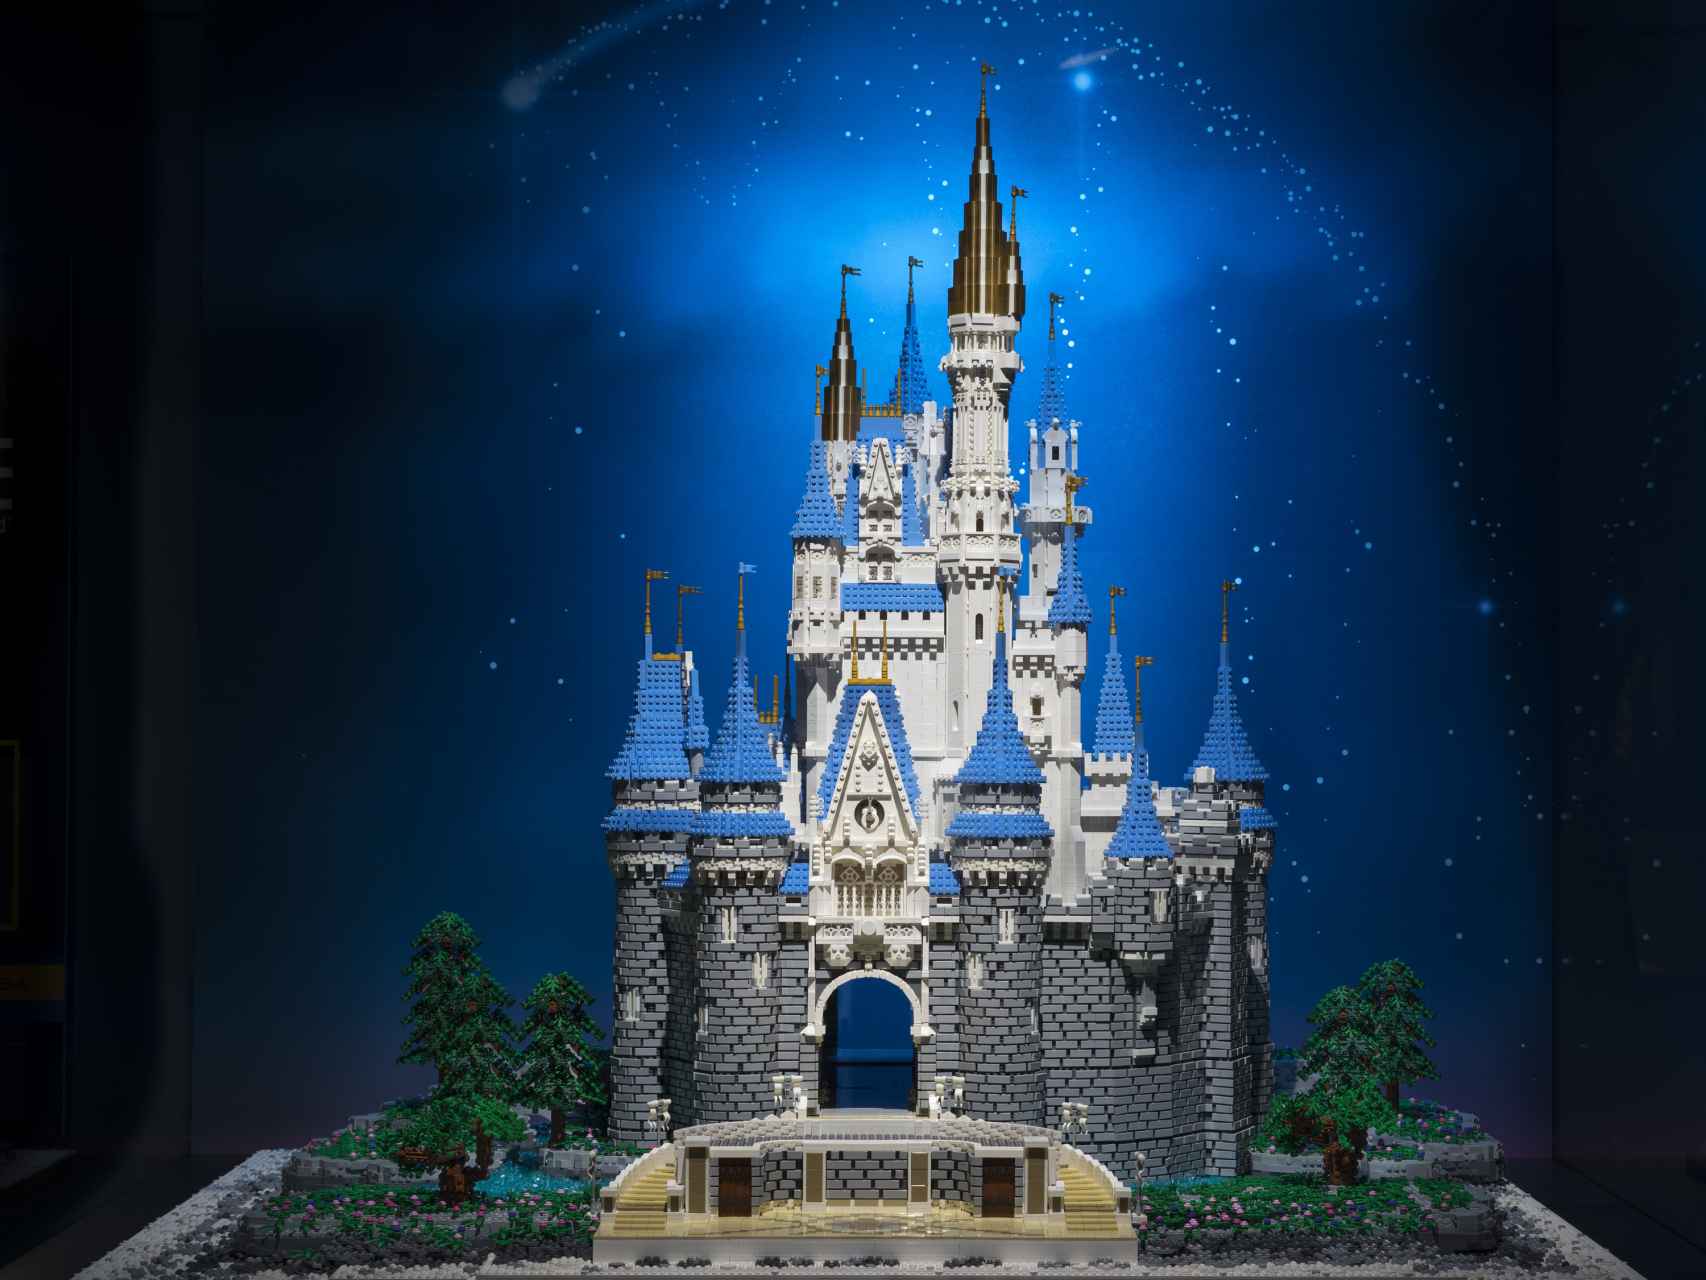 Espectacular Castillo de Disney en Lego.